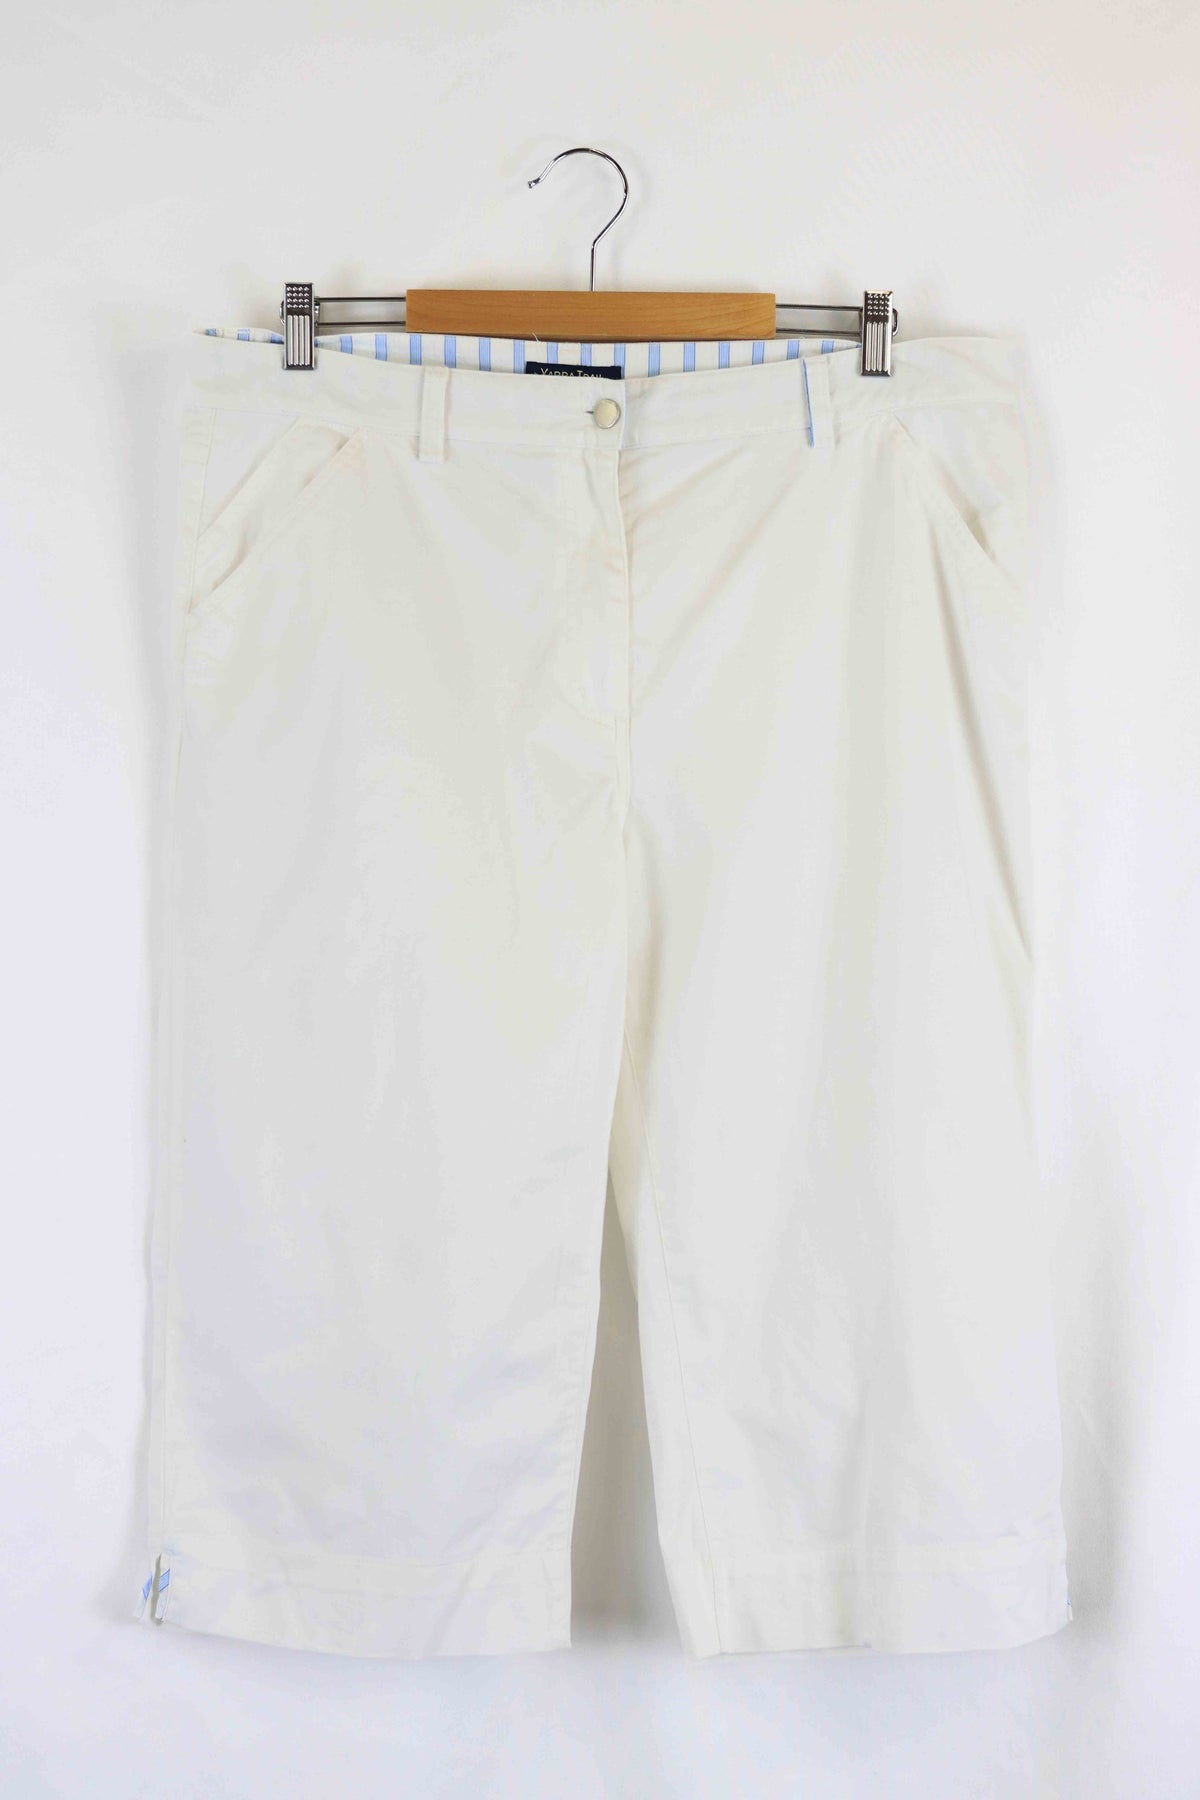 Yarra Trail White Pants 18